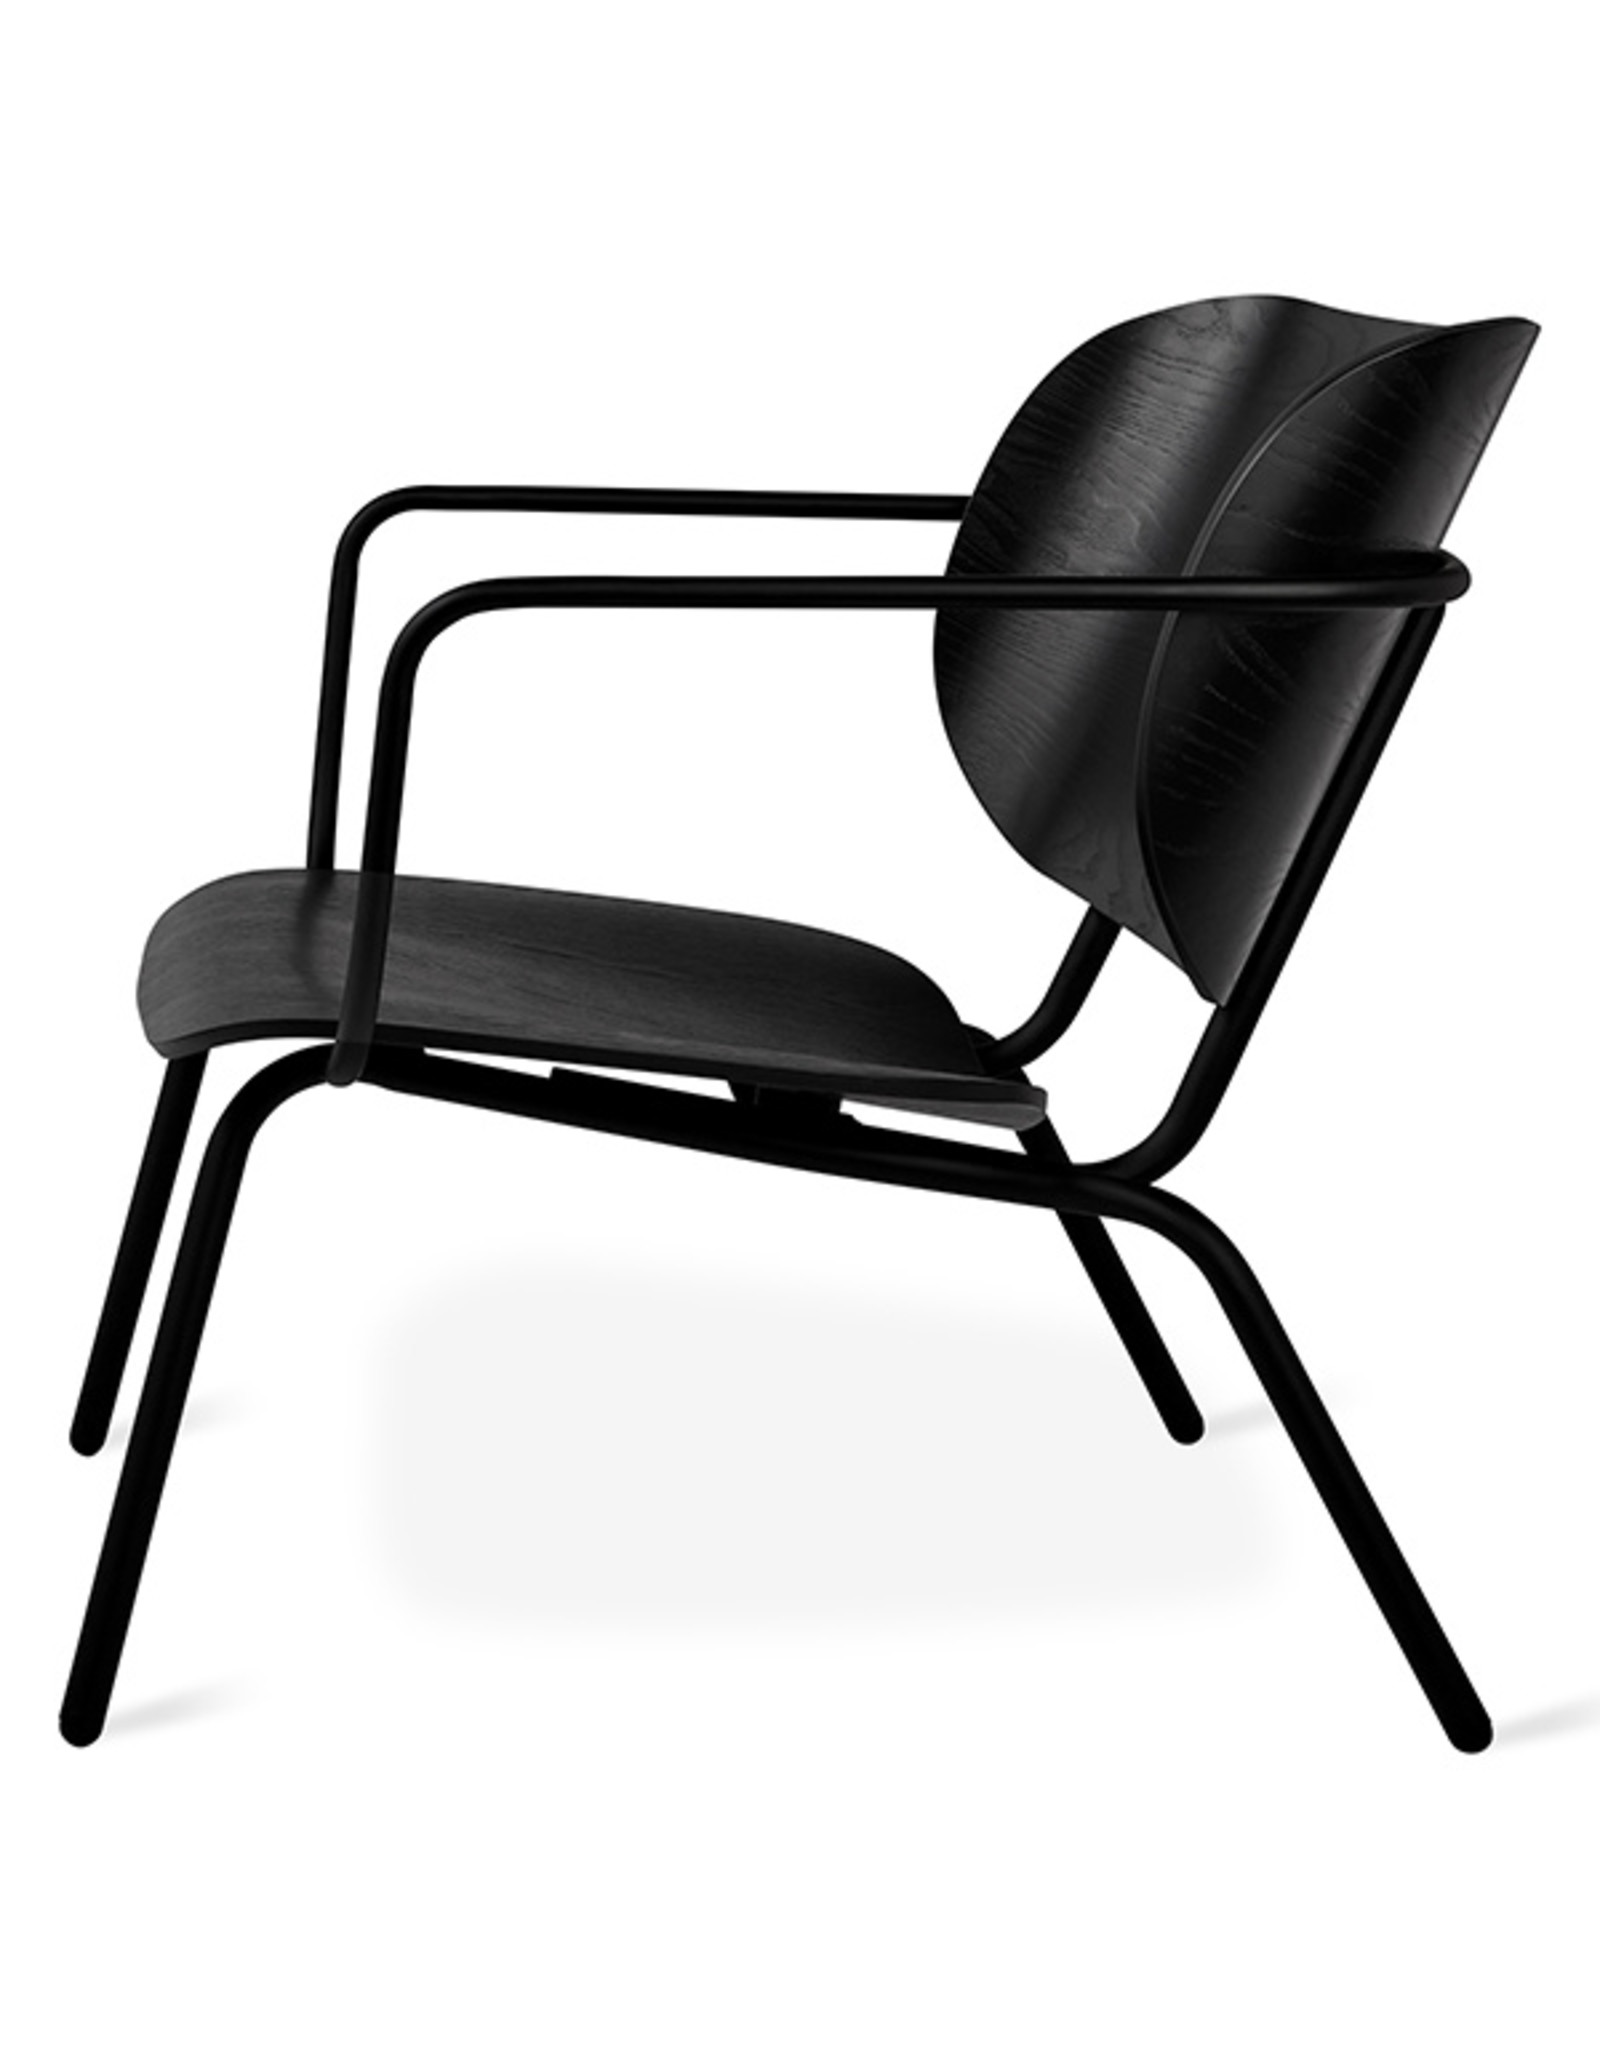 Gus* Modern Bantam Lounge Chair